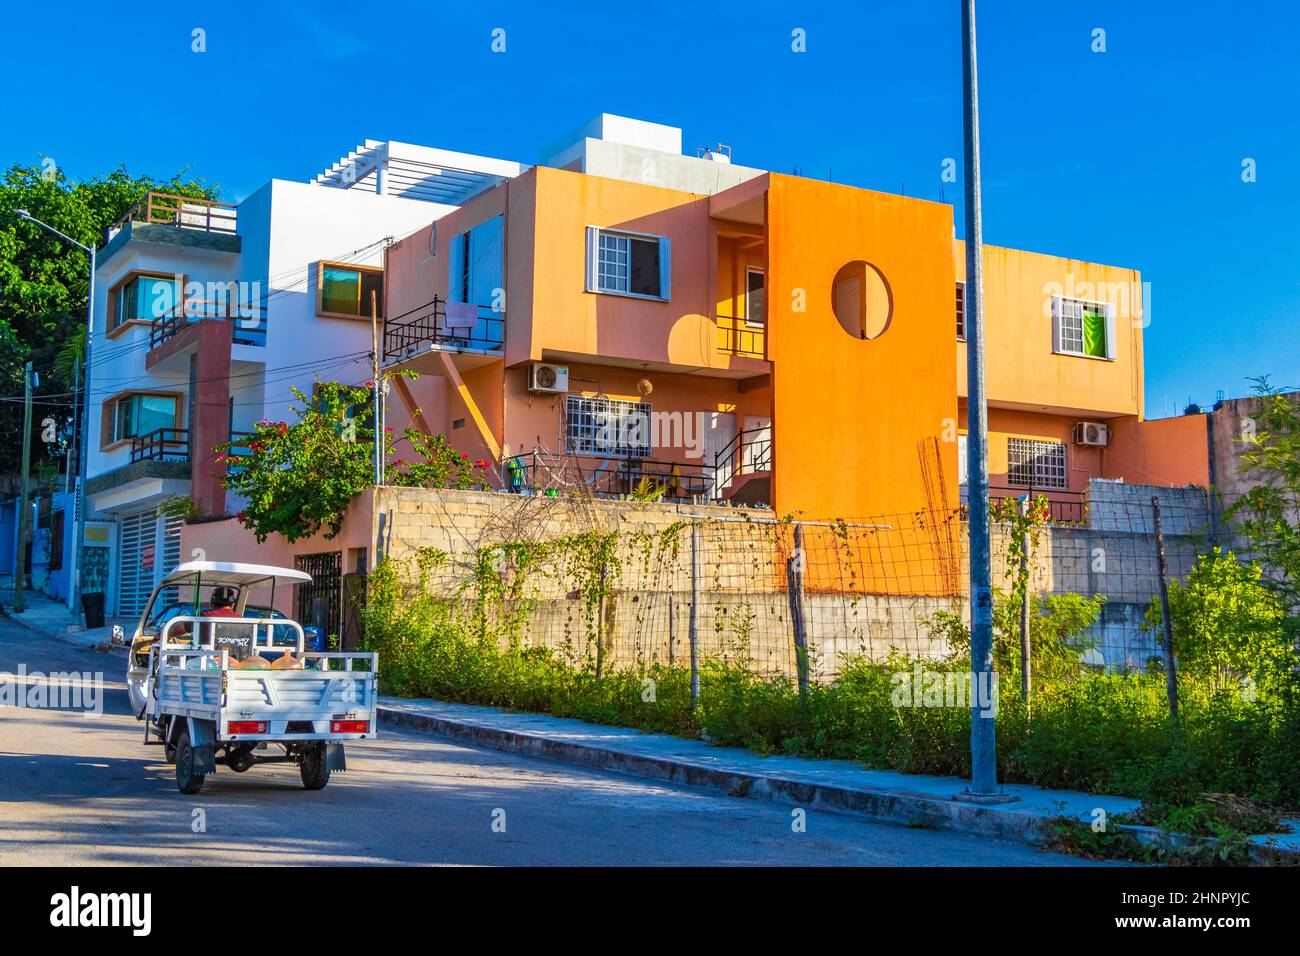 Résidence typique orange hôtel condominium bâtiment Playa del Carmen Mexique. Banque D'Images